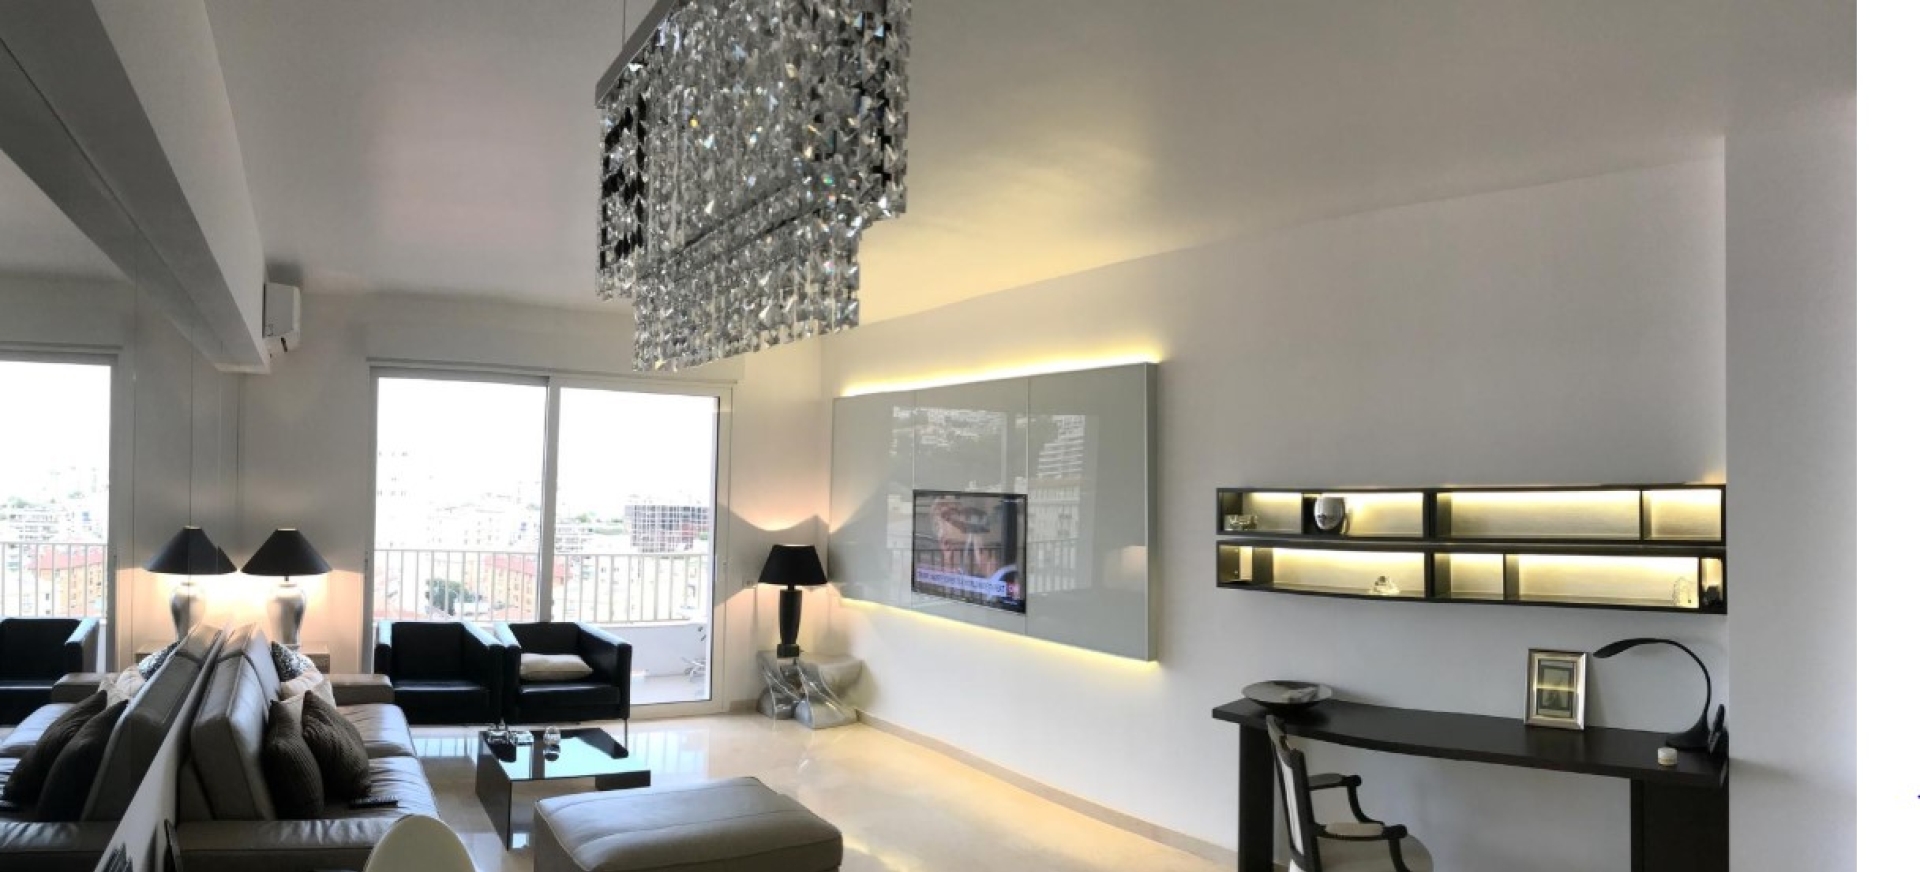 Dotta Appartement de 4 pieces a vendre - GEMEAUX - Jardin Exotique - Monaco - imgimage1